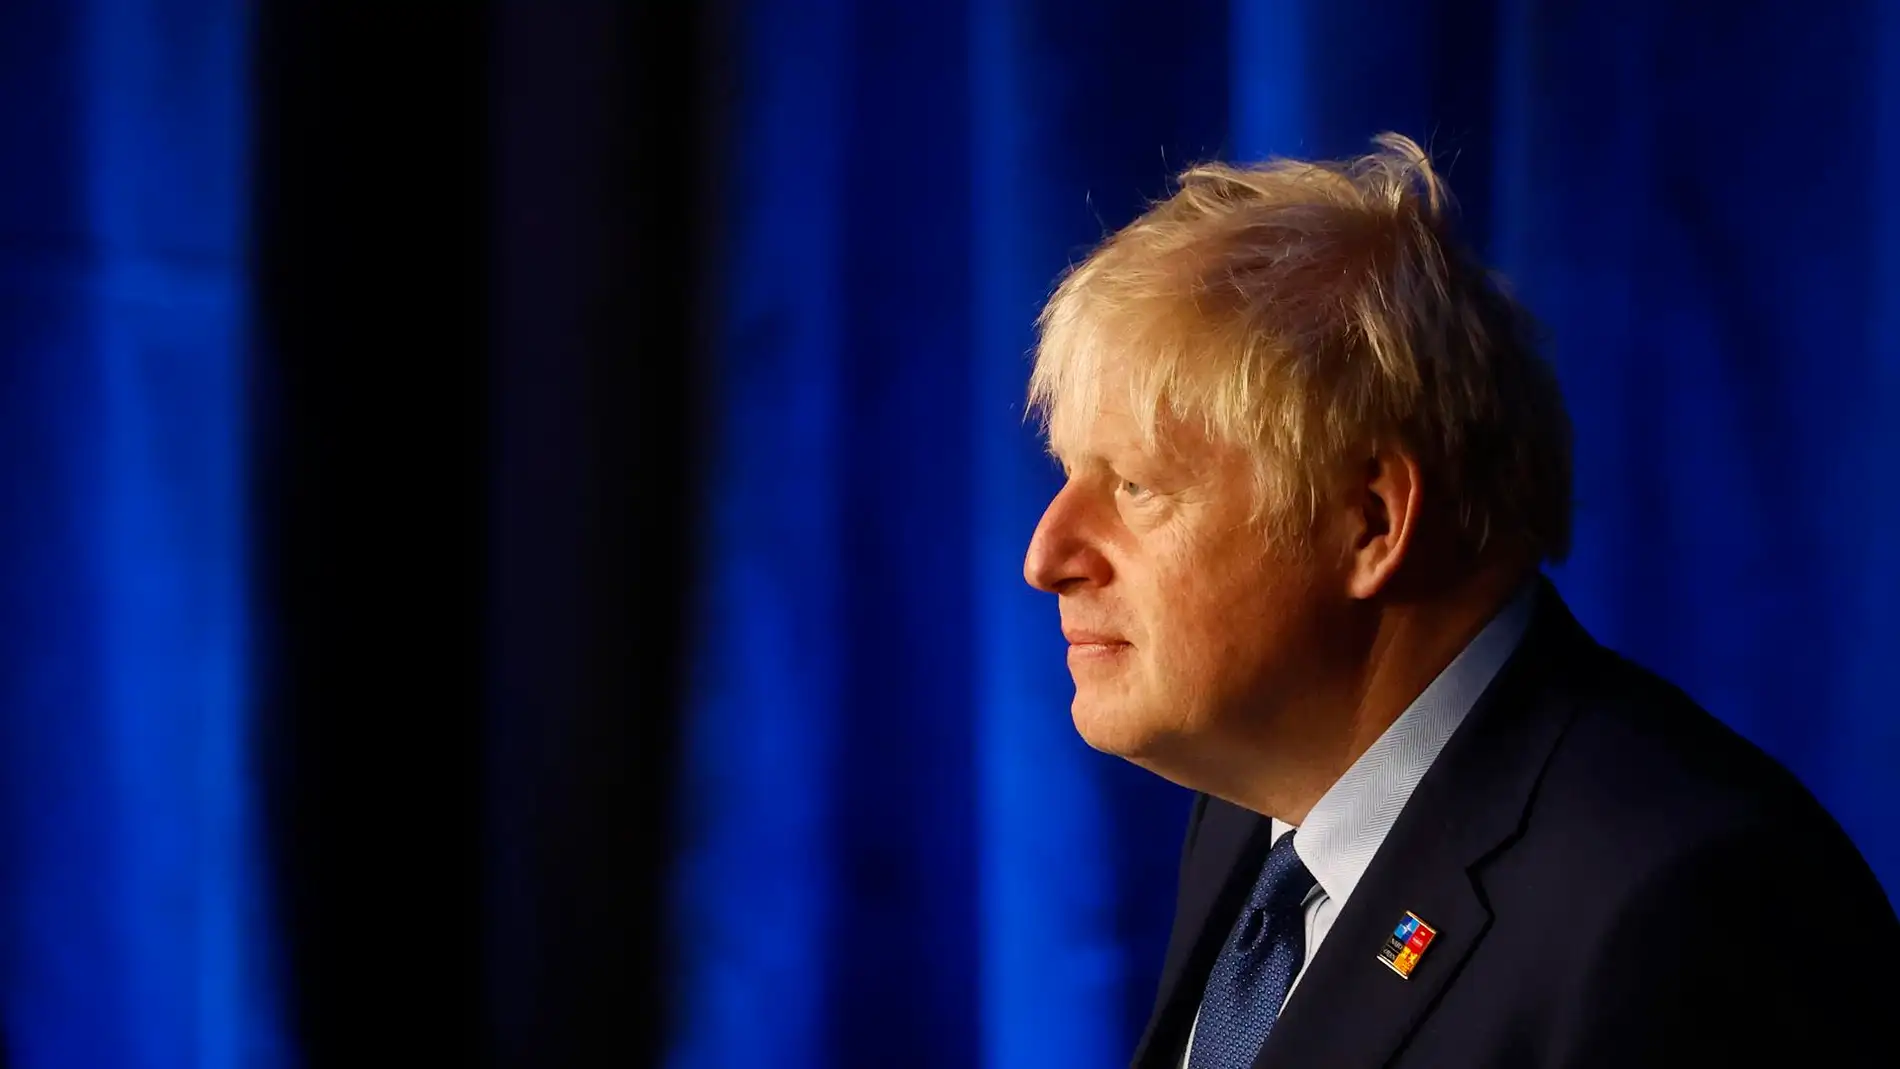 Dimiten los ministros británicos de Economía y Salud al perder la confianza en Boris Johnson